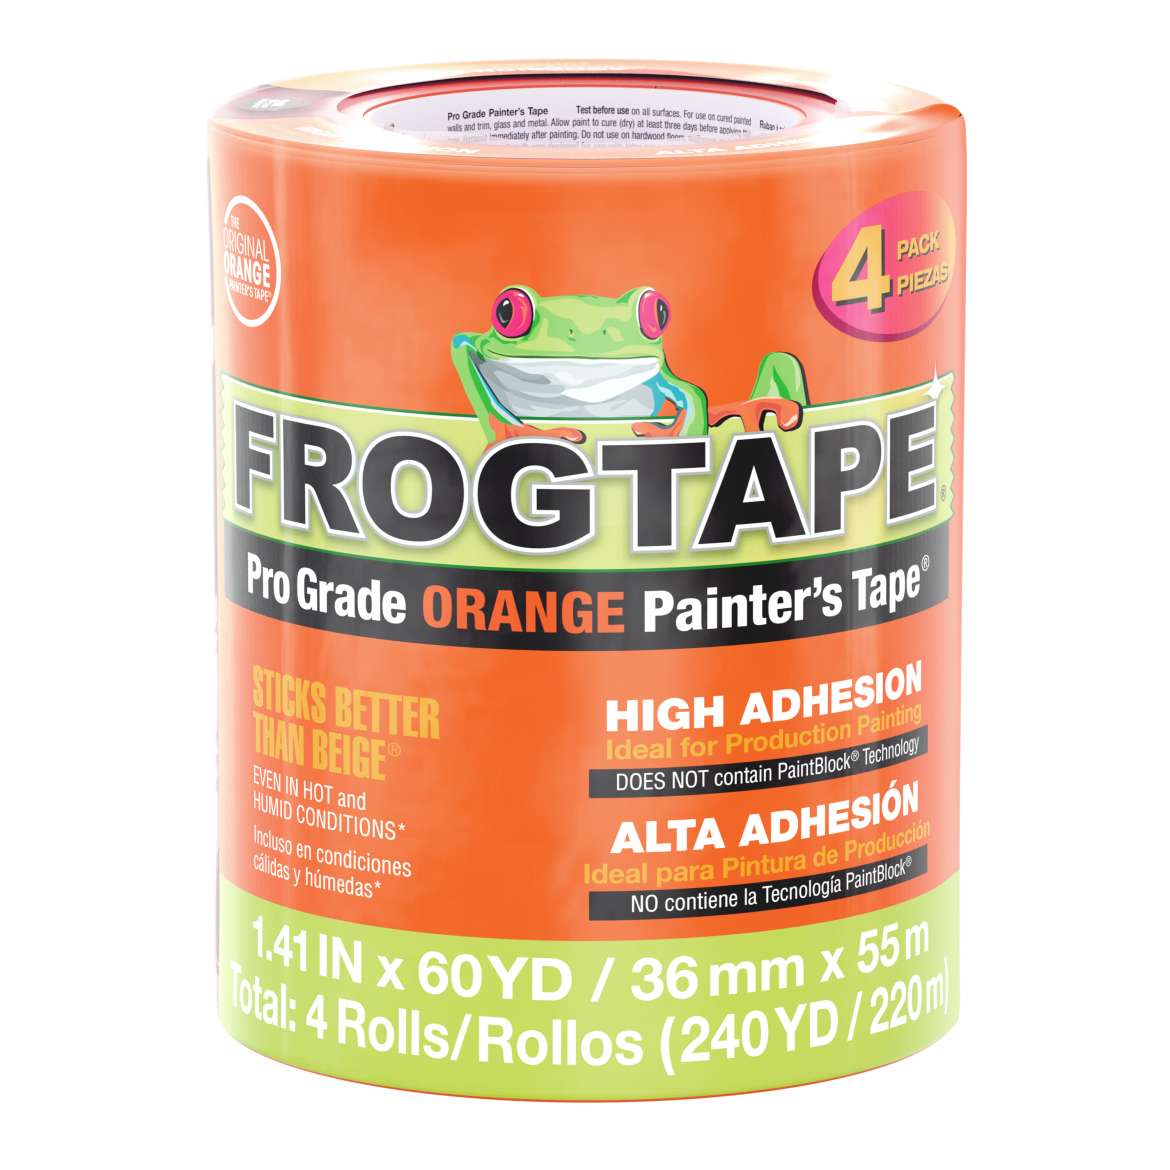 FrogTape® Pro Grade Orange Painter’s Tape® – Orange, 4 pk, 1.41 in. x 60 yd.